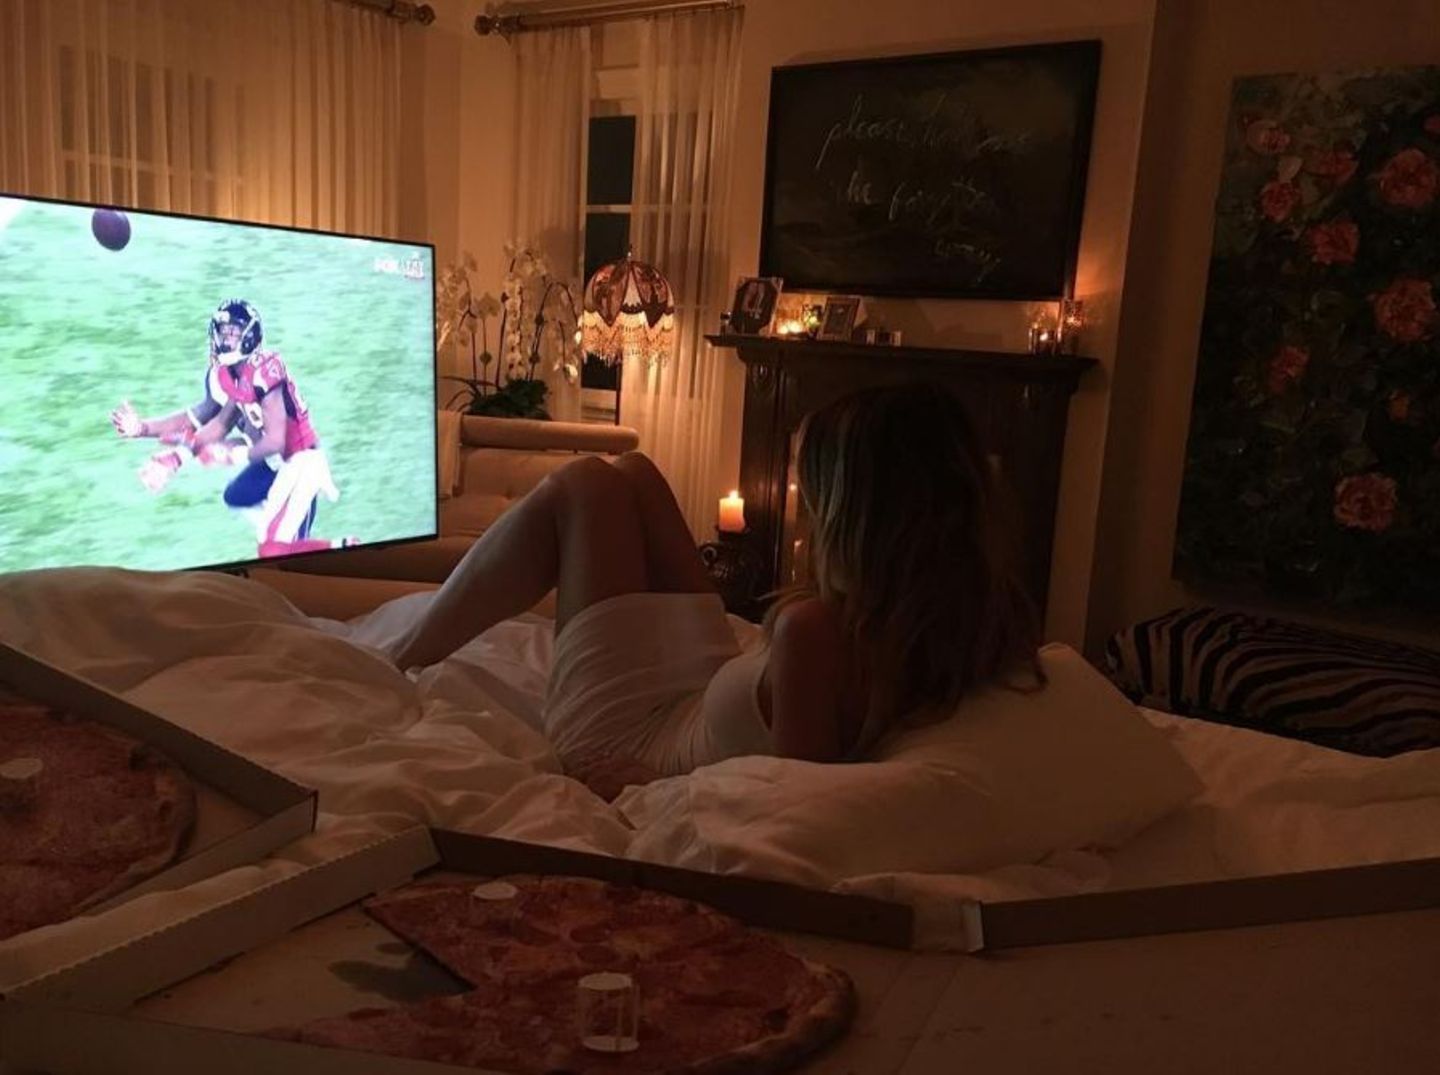 Heidi Klum schaut sich das Spiel ganz gemütlich im Bett an, mit ganz viel Pizza.